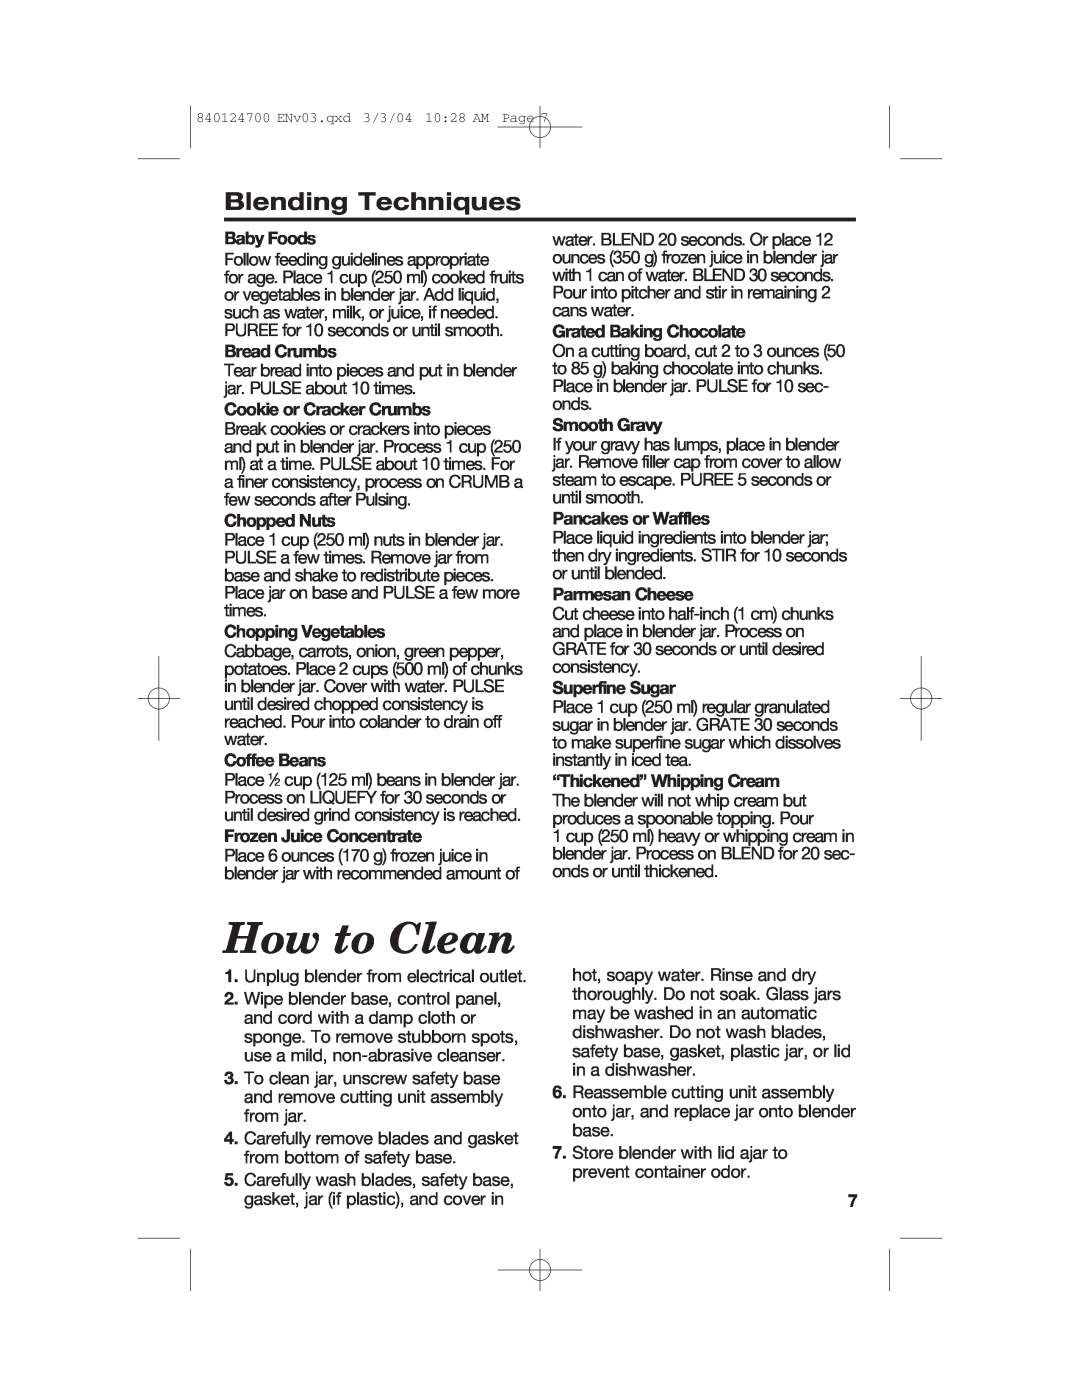 Hamilton Beach 2254 manual How to Clean, Blending Techniques 